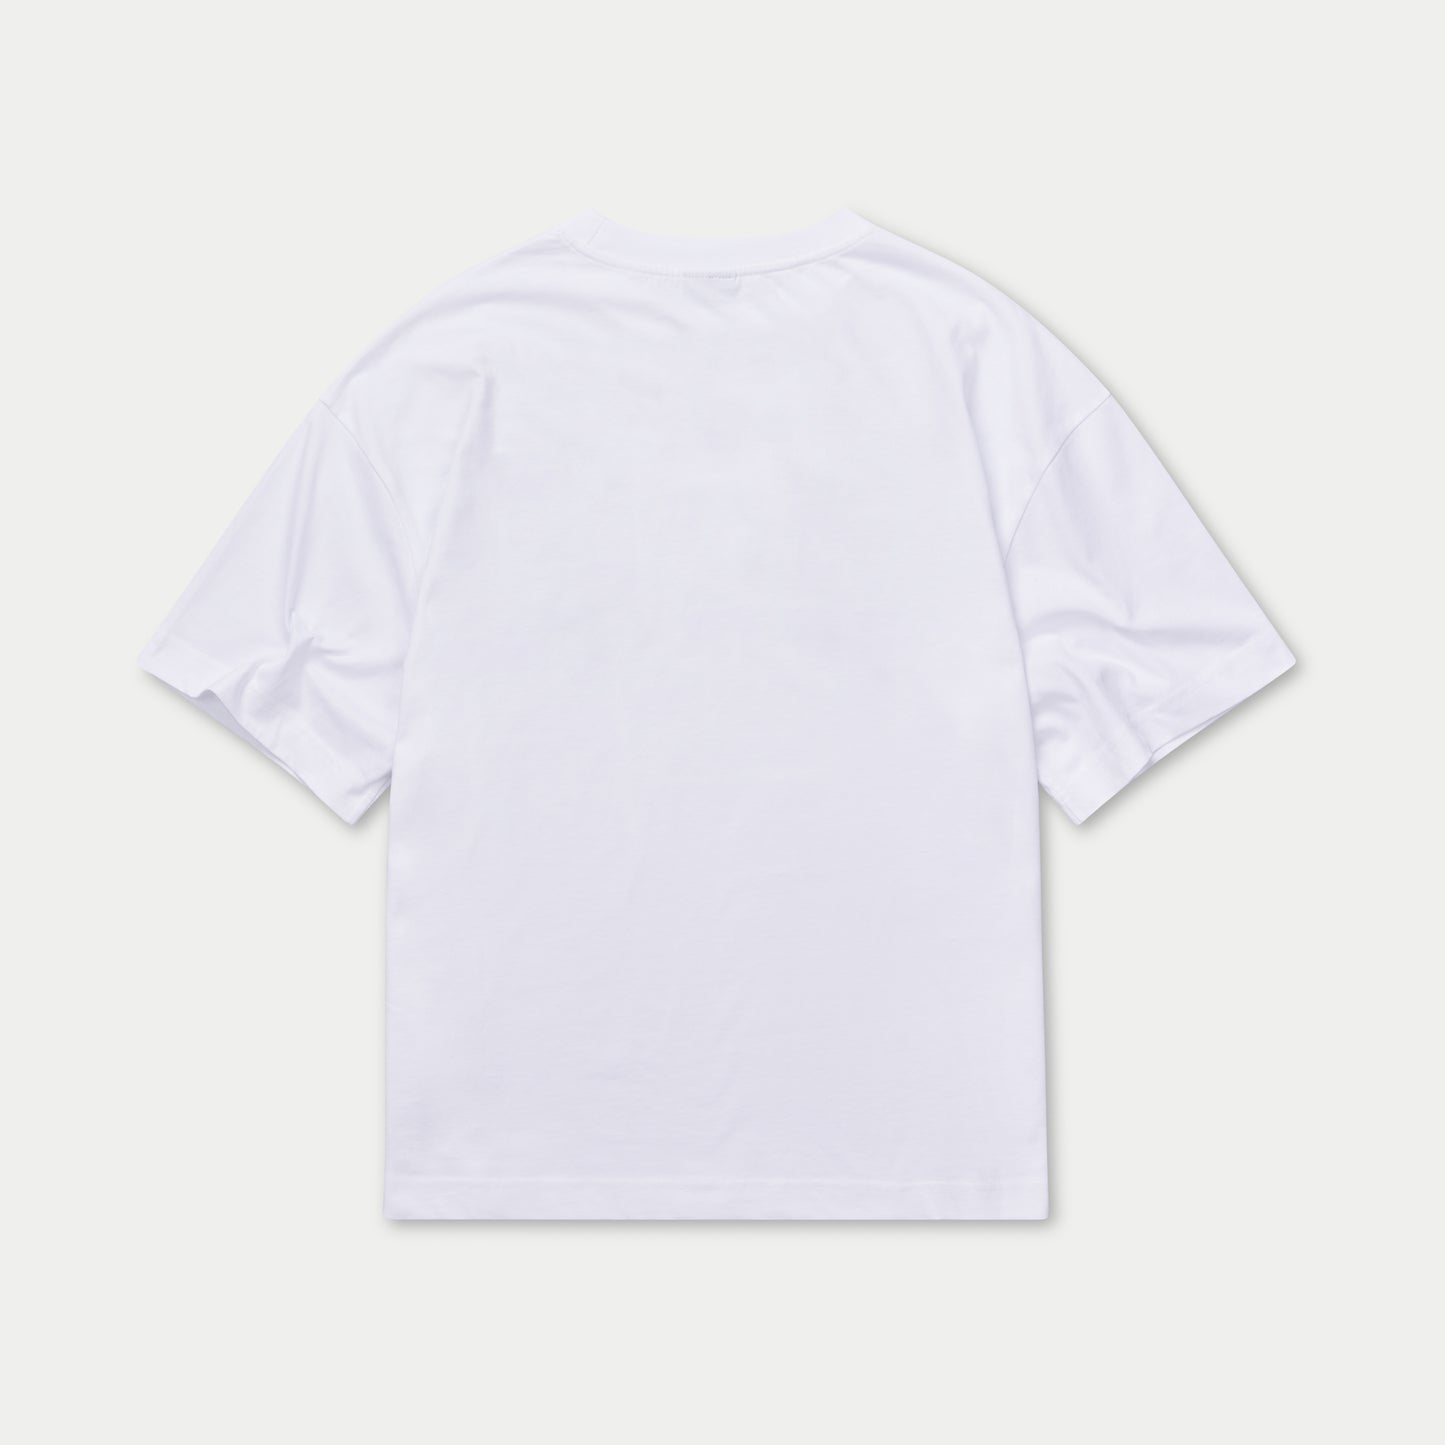 Mens 365 Oversized T-Shirt - White